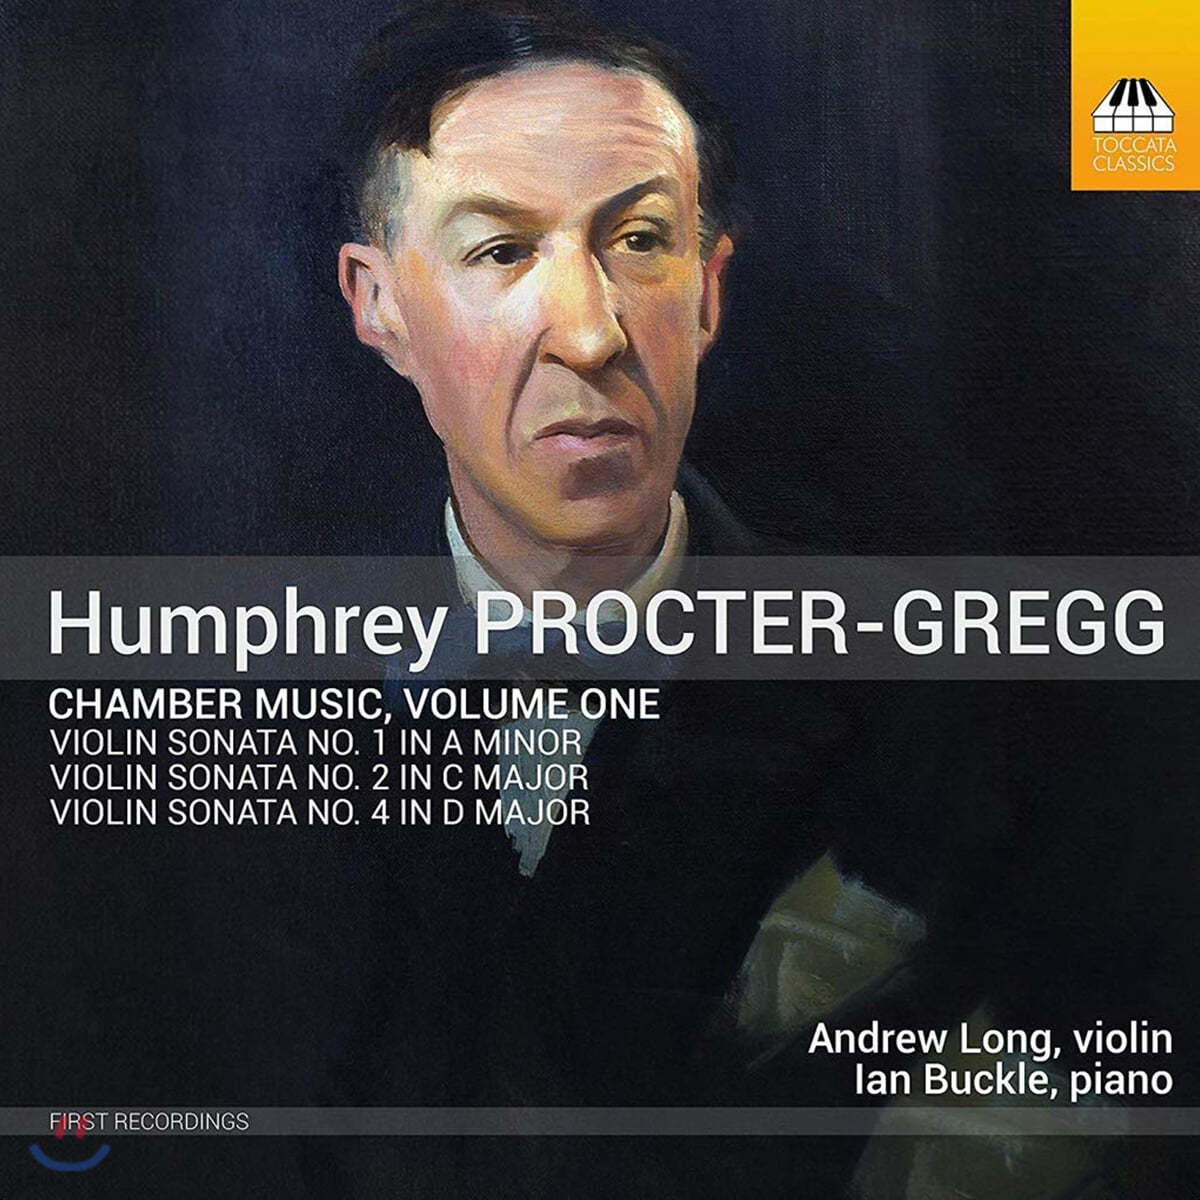 험프리 프록터-그렉: 바이올린 소나타 1~3번 (Humphrey Procter-Gregg: Chamber Music, Vol. 1)